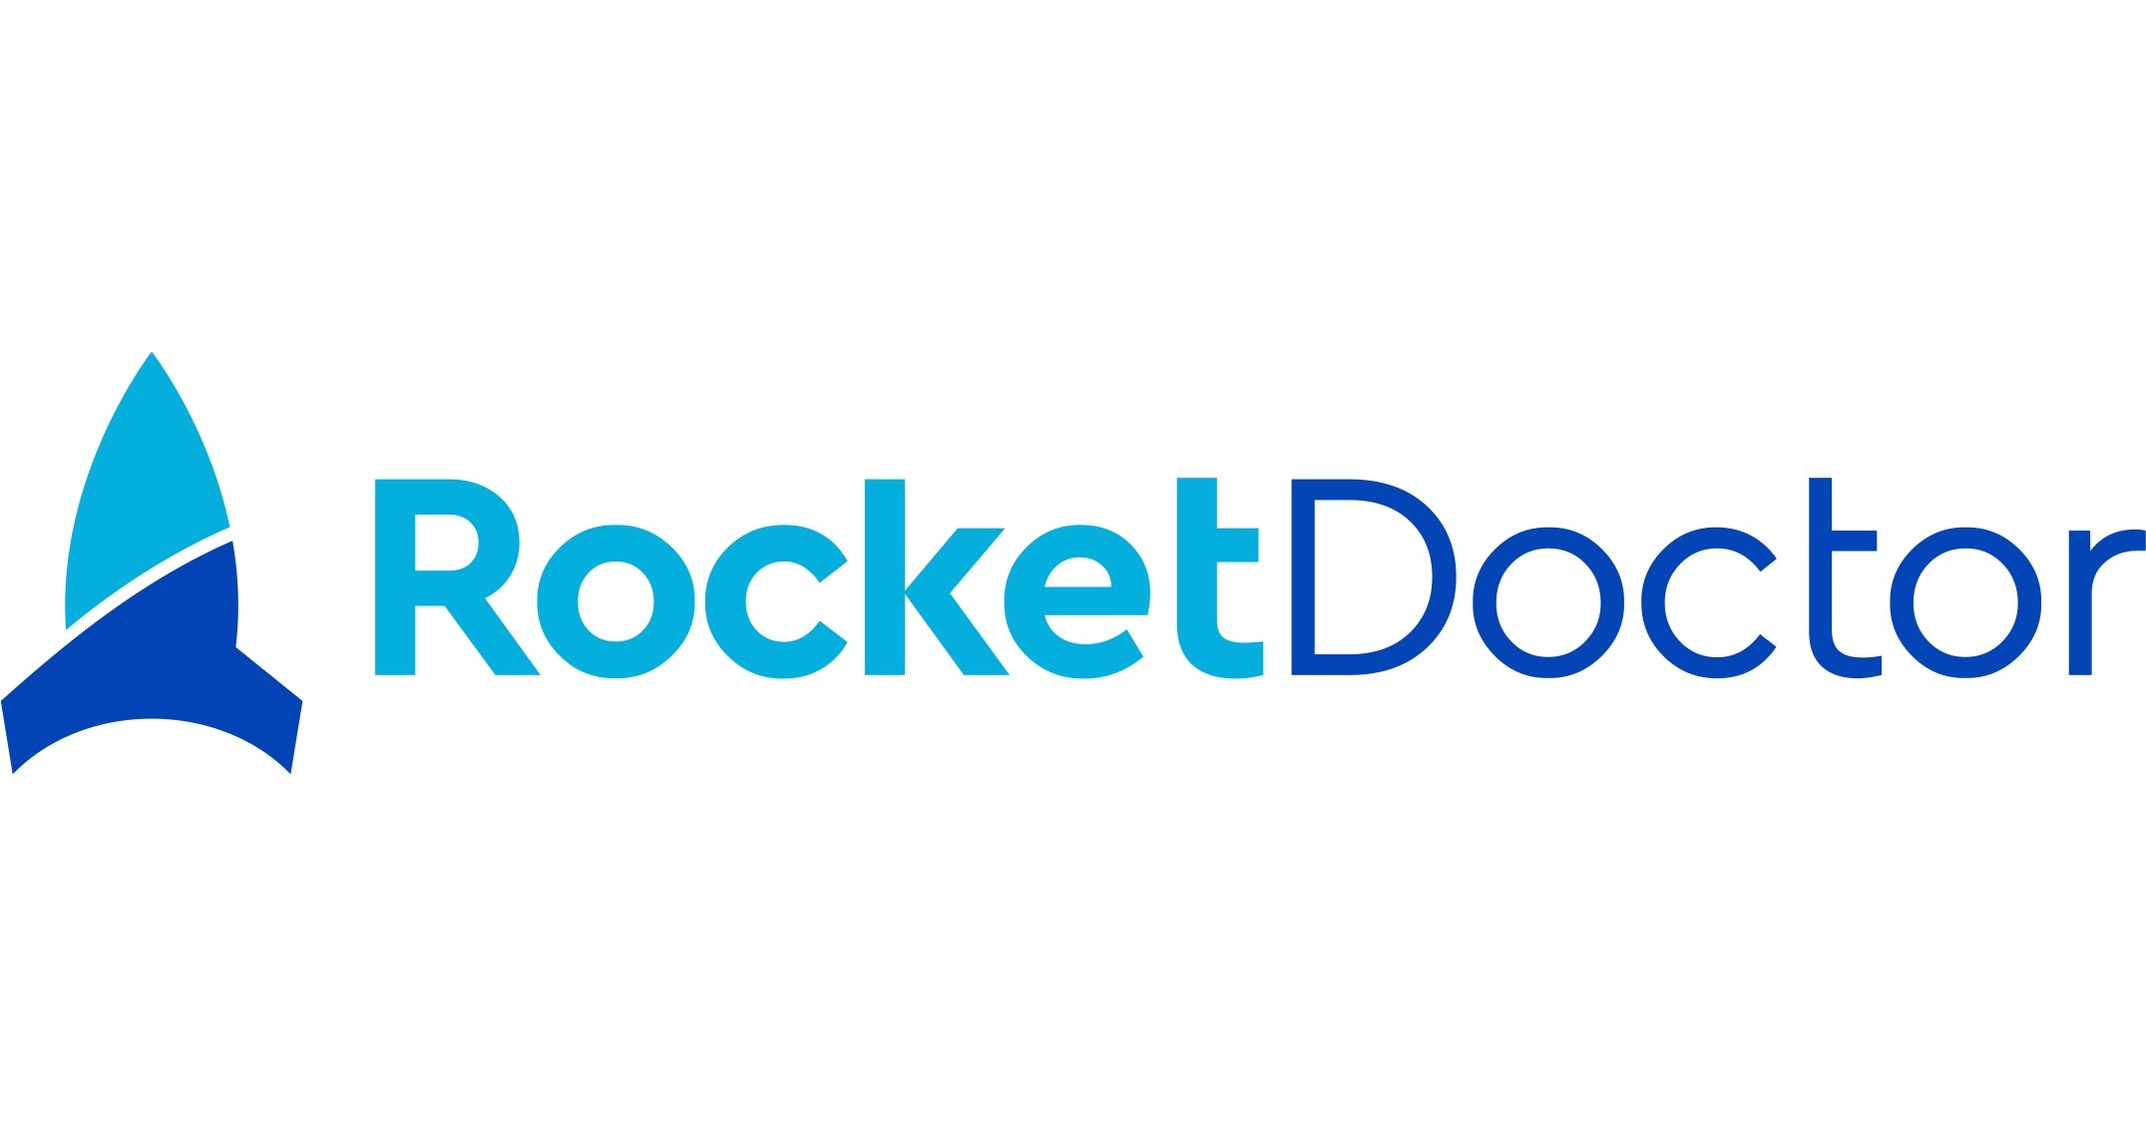 Rocket Doctor: Online Doctors in Canada